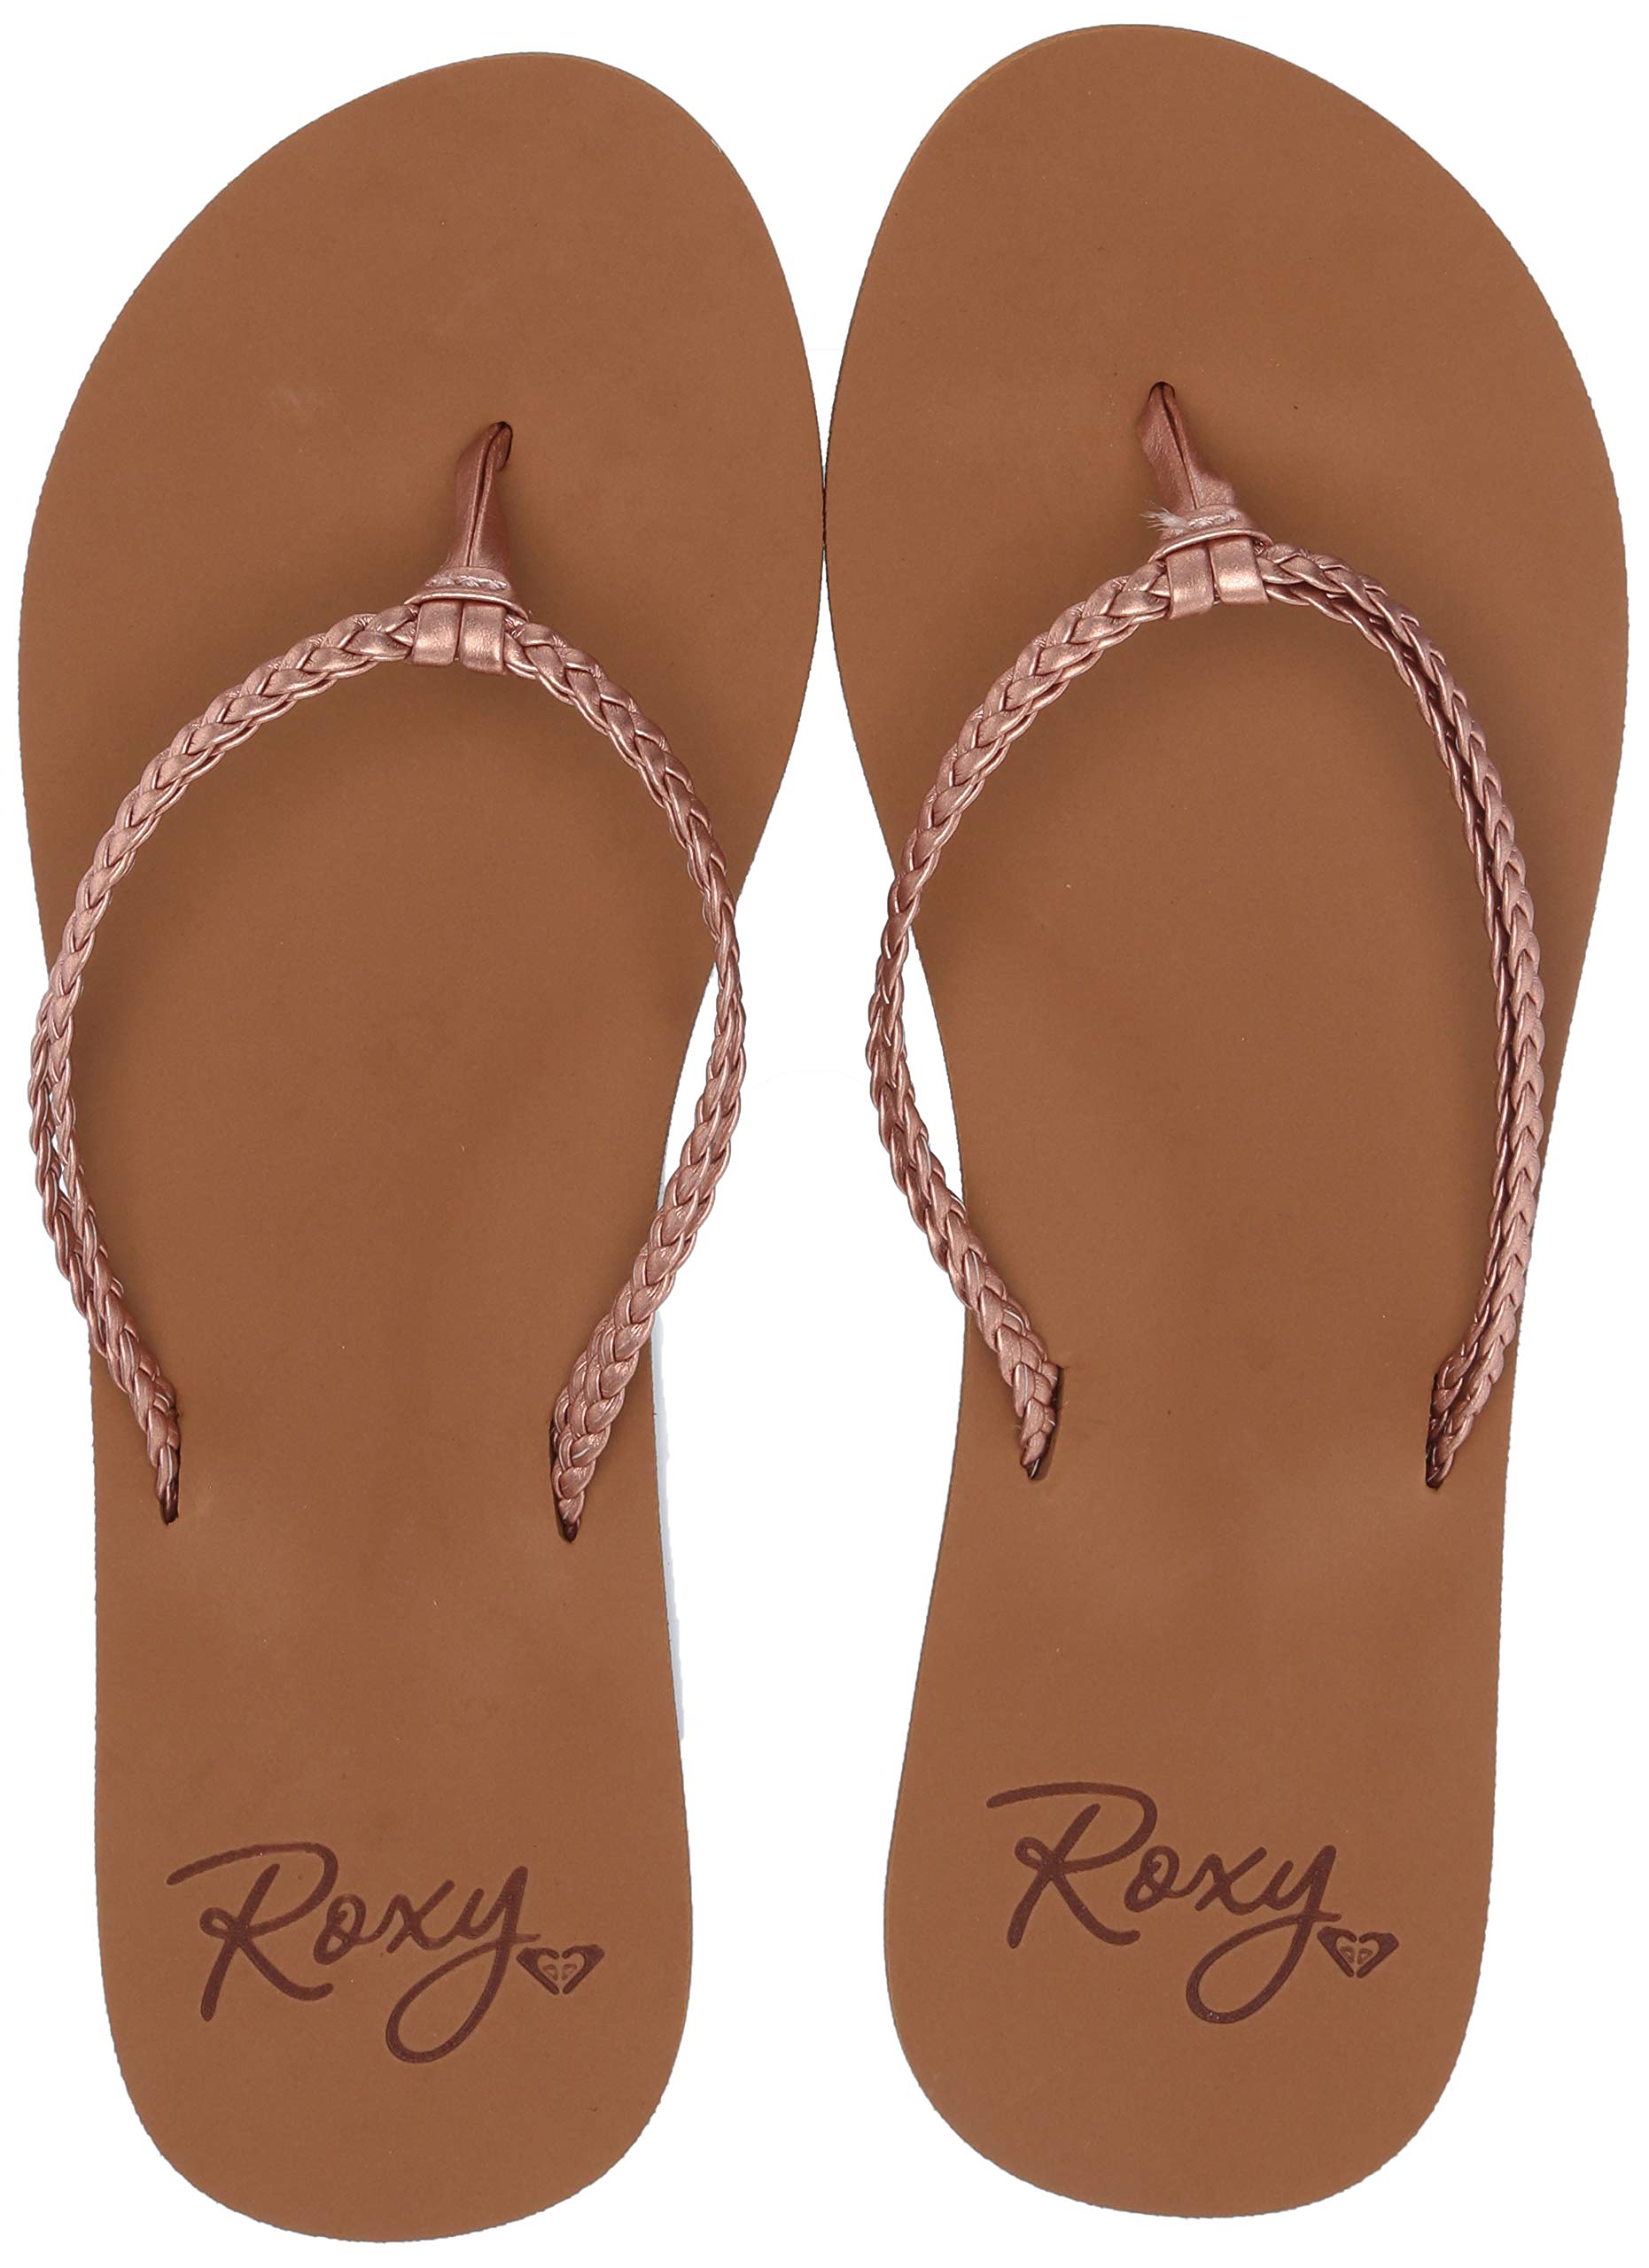 Roxy Women's Costas Sandal Flip Flop